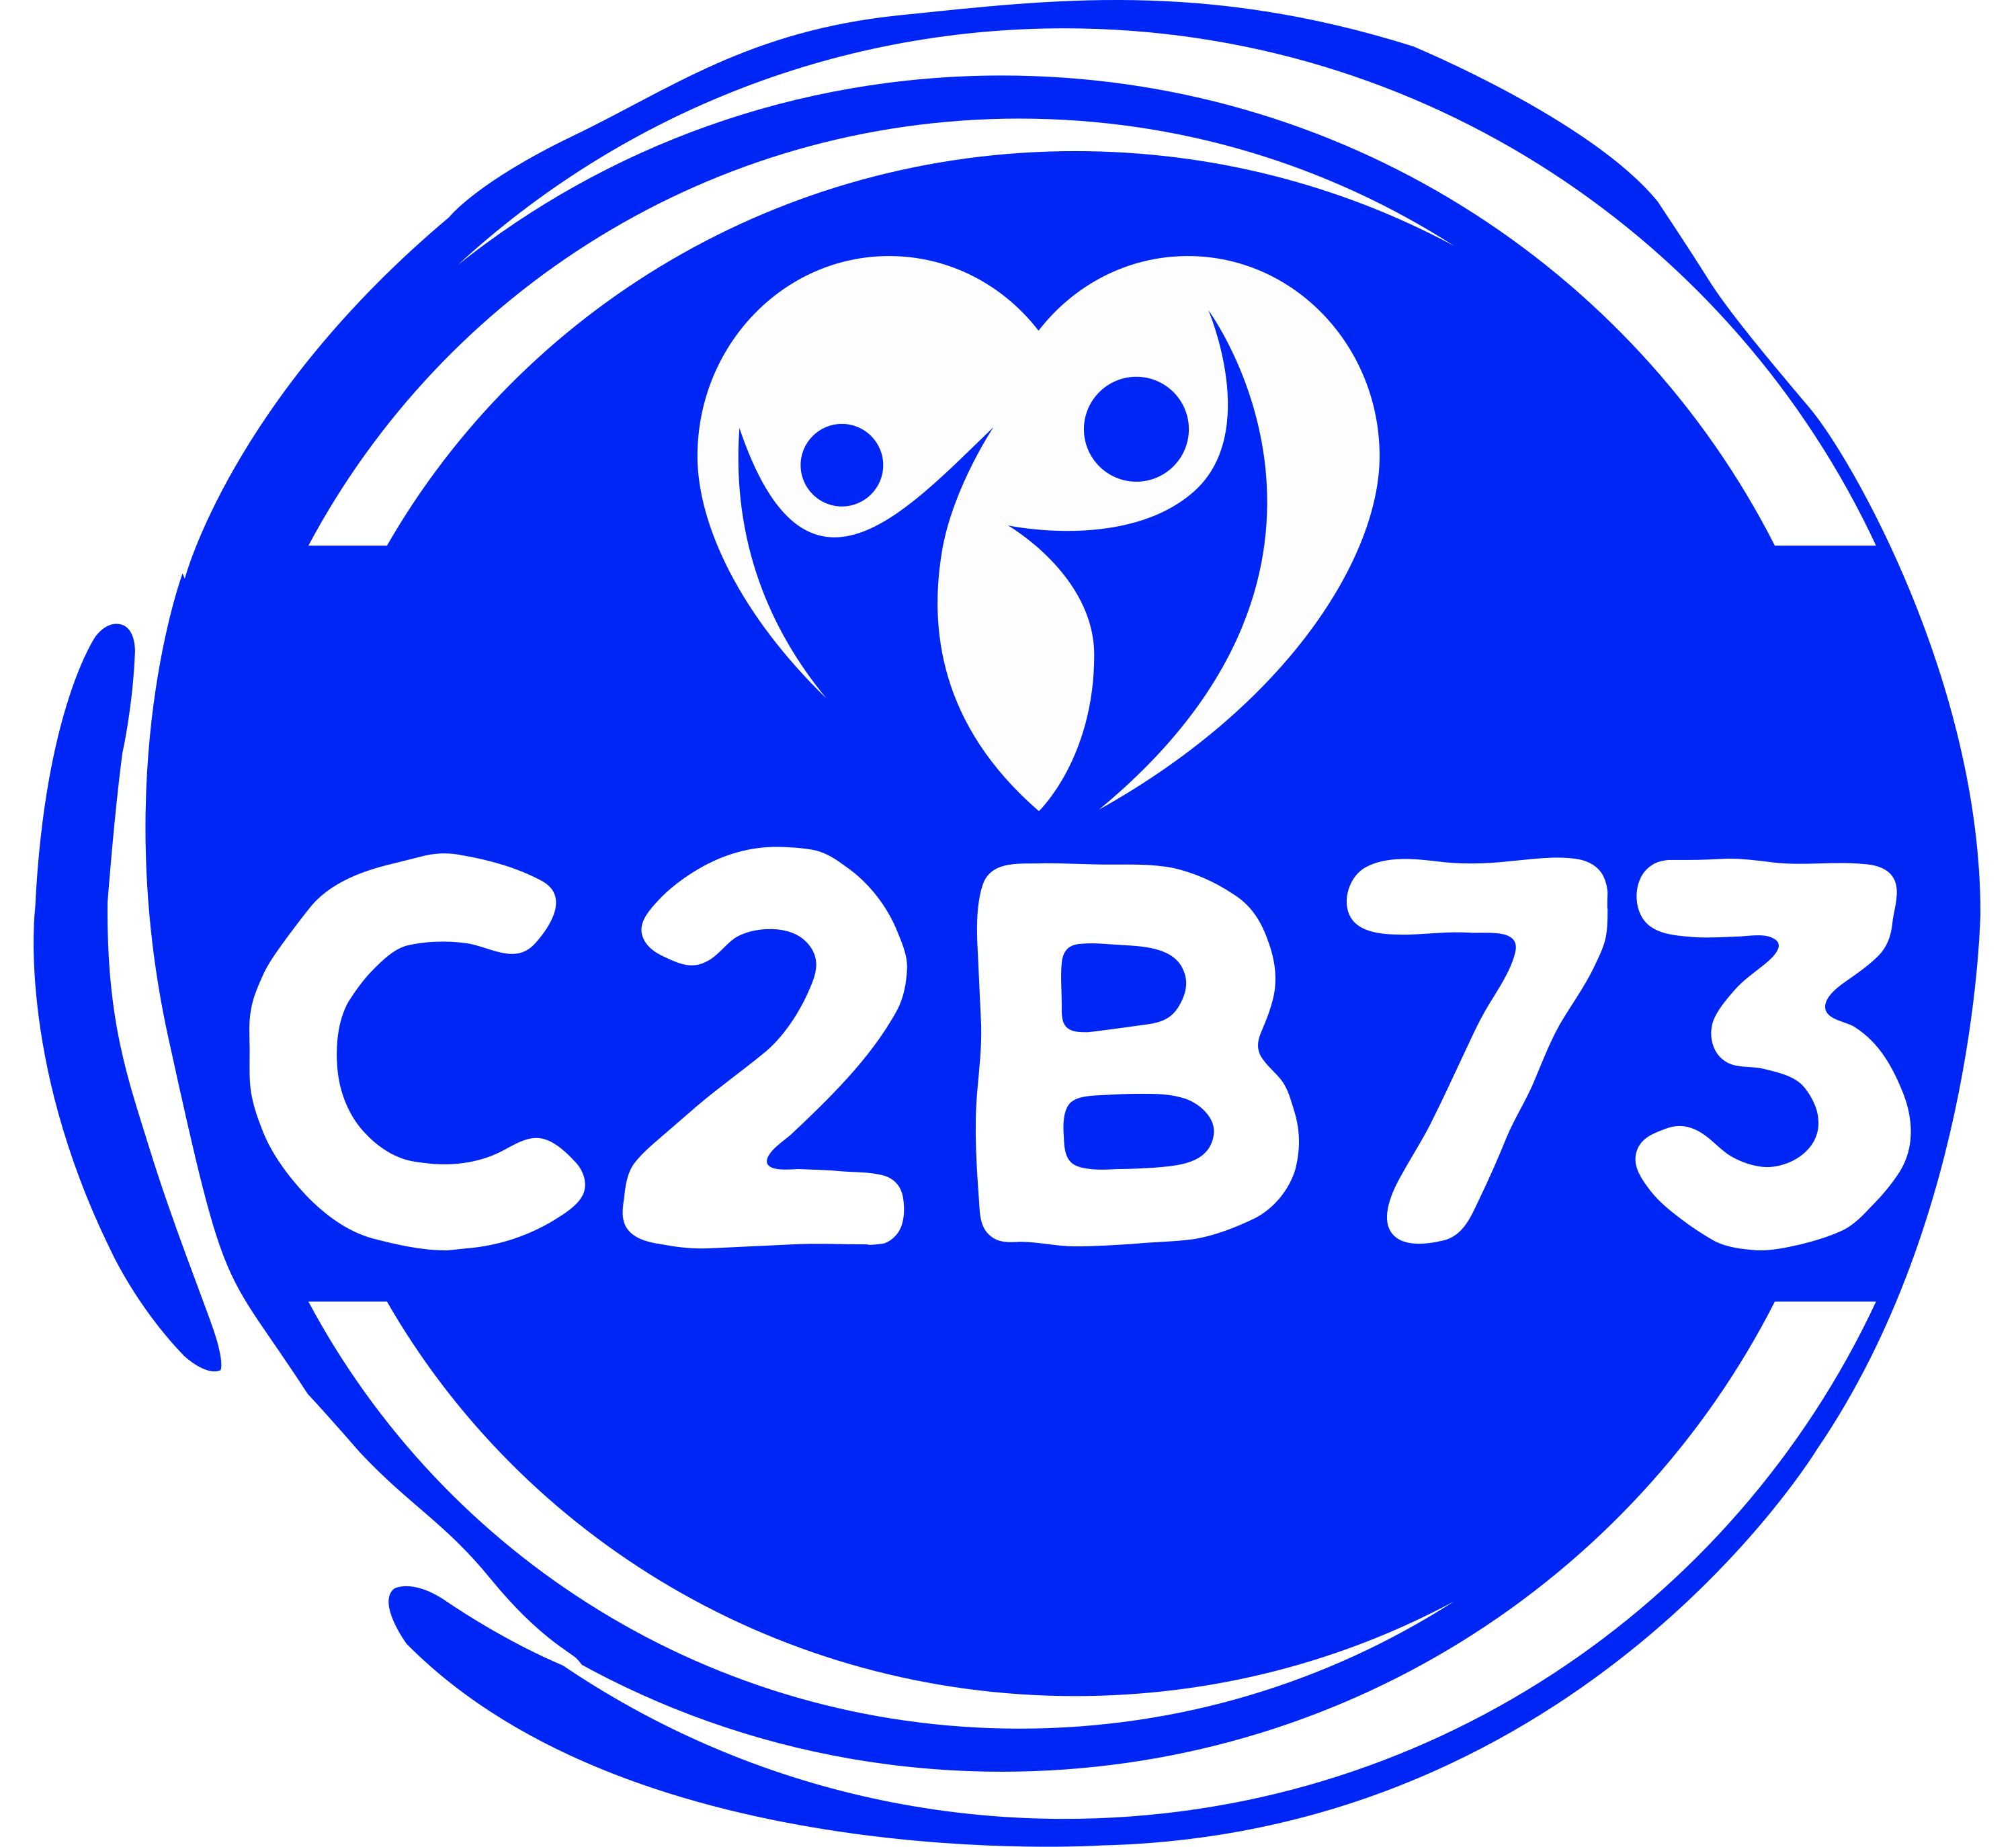 C2B73 - Collecte des bouchons en plastique avec Coeur2Bouchons